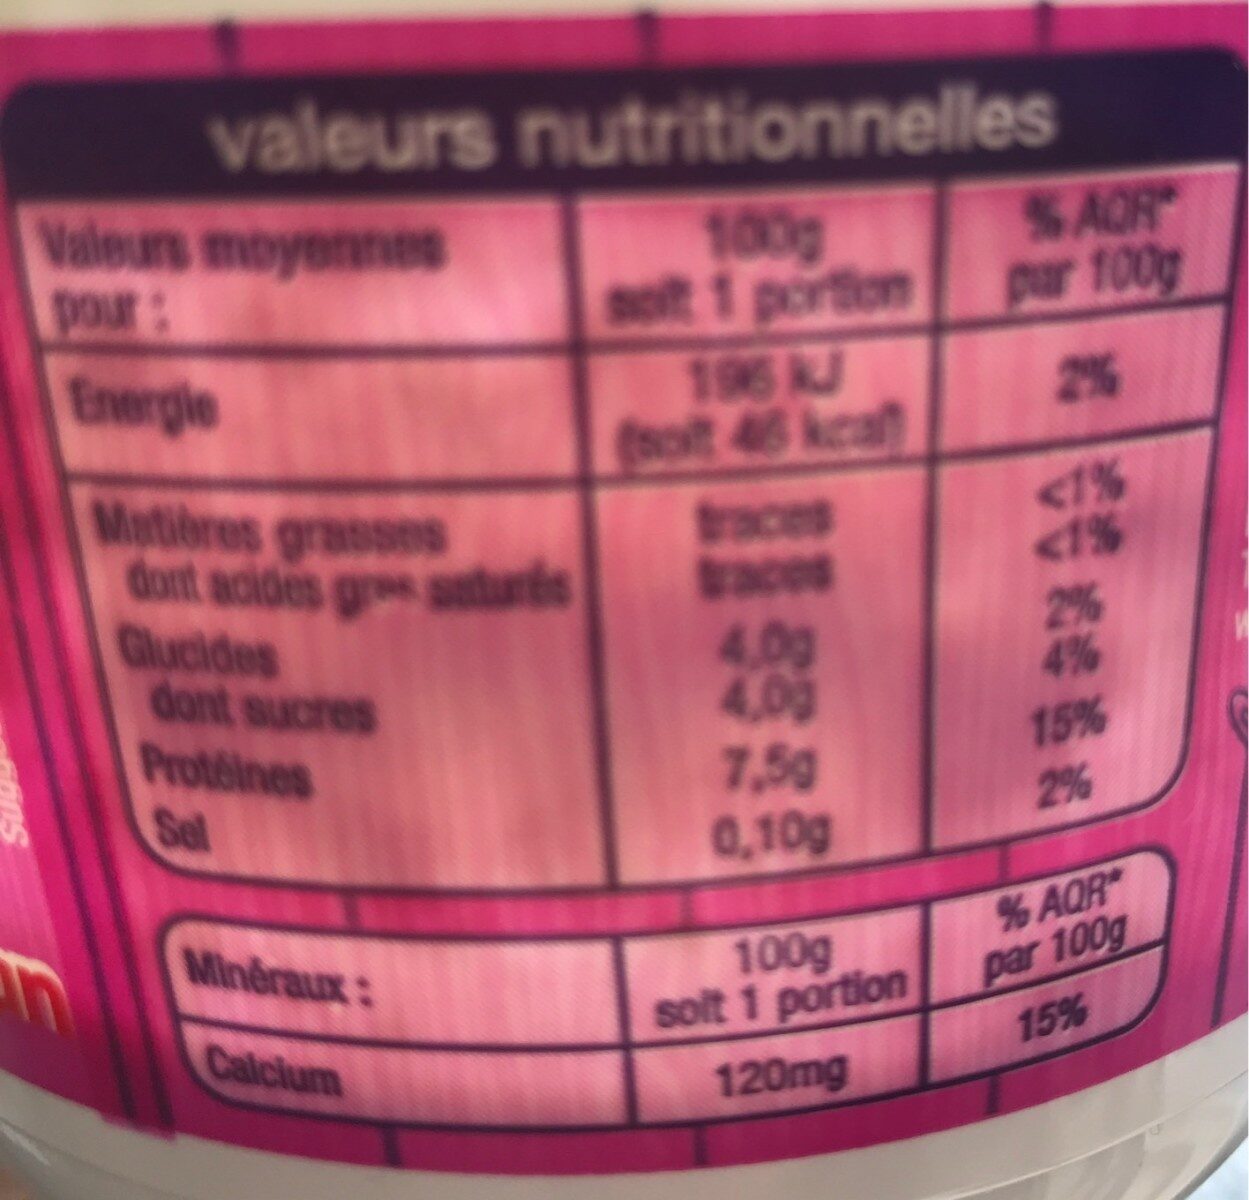 Fromage blancDoux et Onctueux0% de matière grasseLait Origine FranceSource de calcium - Tableau nutritionnel